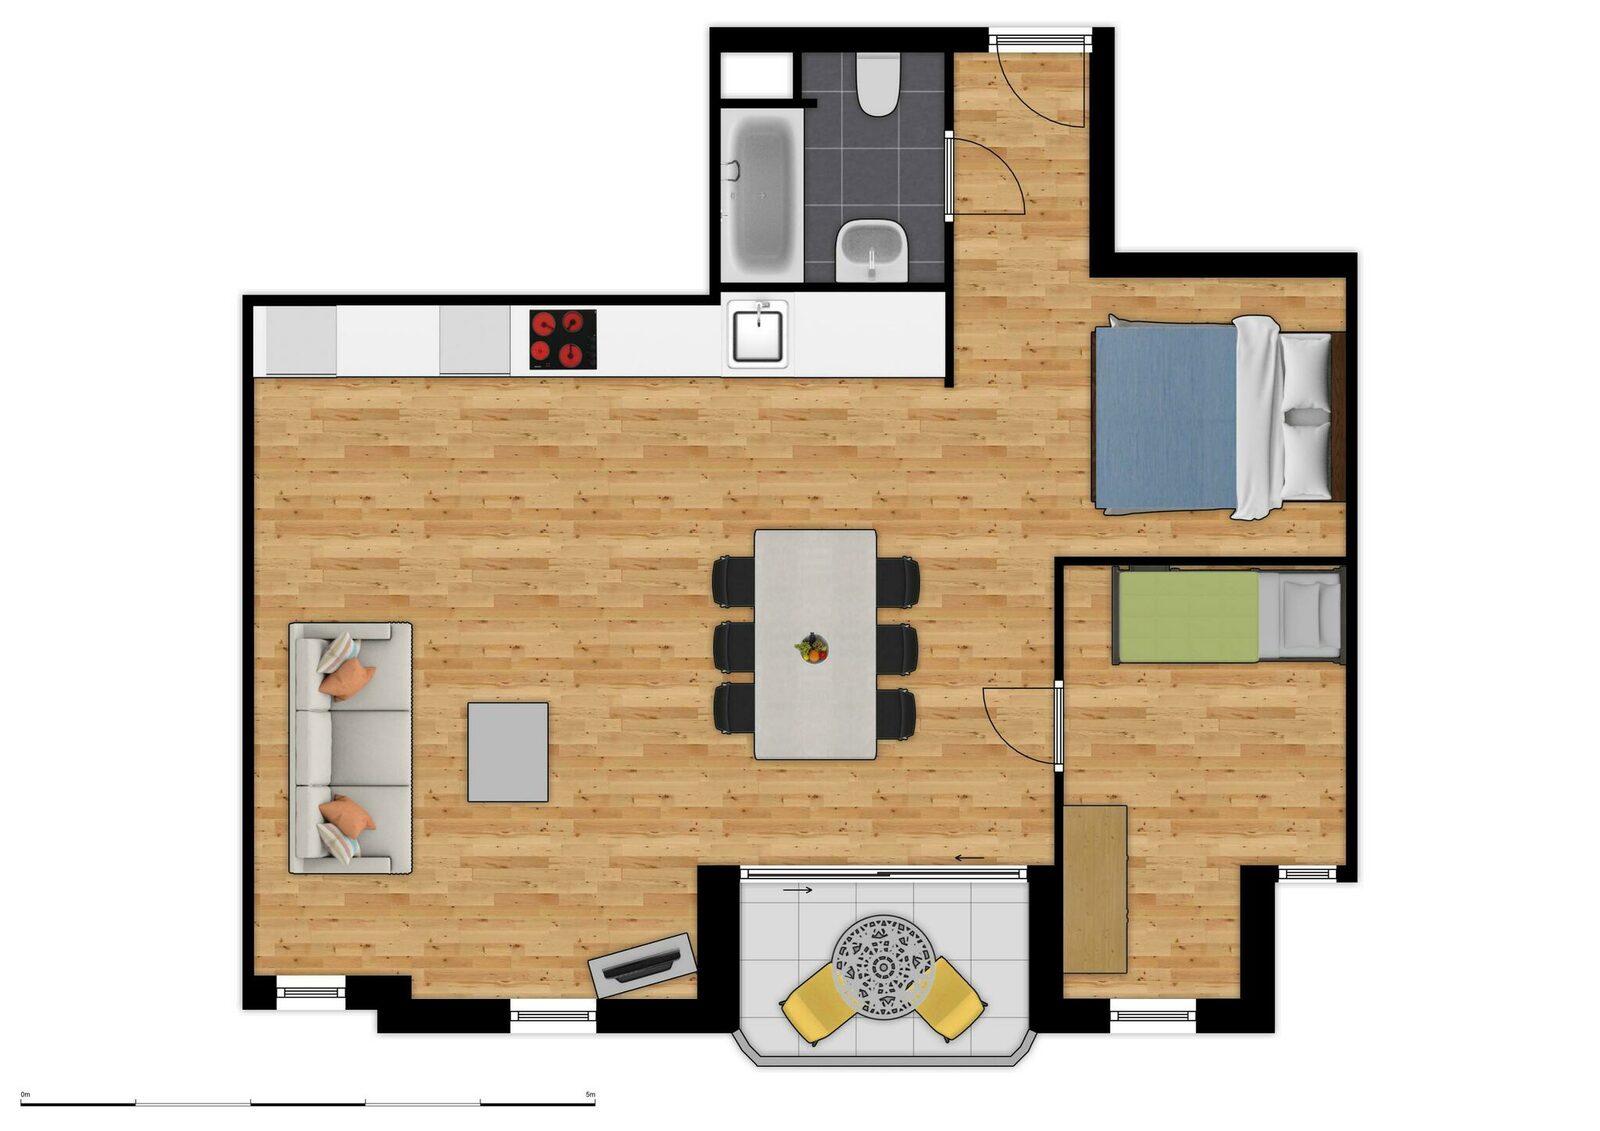 Comfort Suite - 6p | Slaapkamer - Slaaphoek - Zetelbed | Balkon - Zeezicht